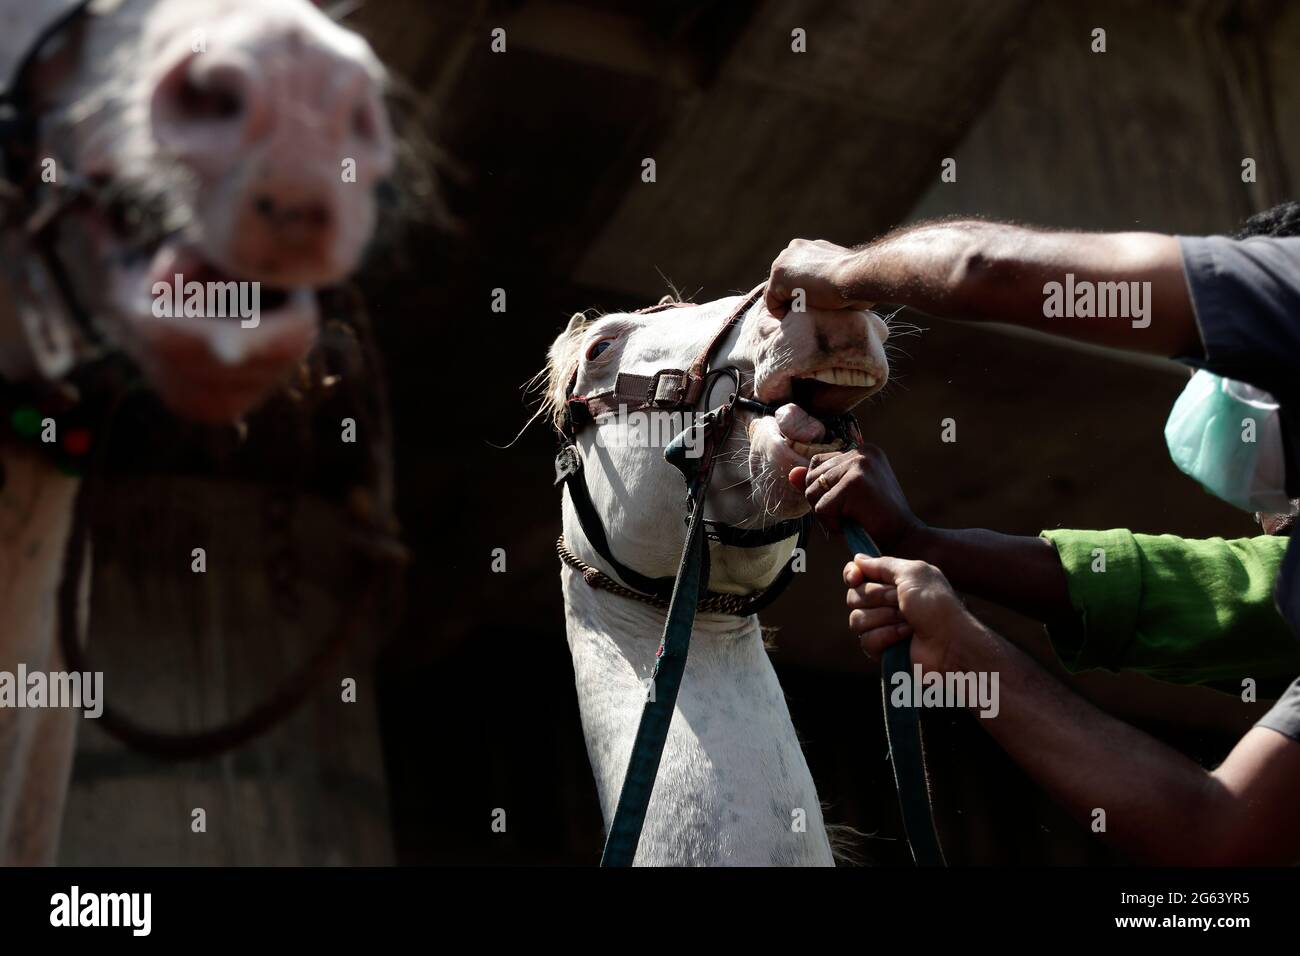 Chennai, India. 02nd de julio de 2021. Los cuidadores tratan de controlar a un caballo durante un campamento anual de chequeo de salud animal para el bienestar de los caballos (no relacionados con la enfermedad de coronavirus) en Chennai. (Foto de Sri Loganathan Velmurugan/Pacific Press) Crédito: Pacific Press Media Production Corp./Alamy Live News Foto de stock